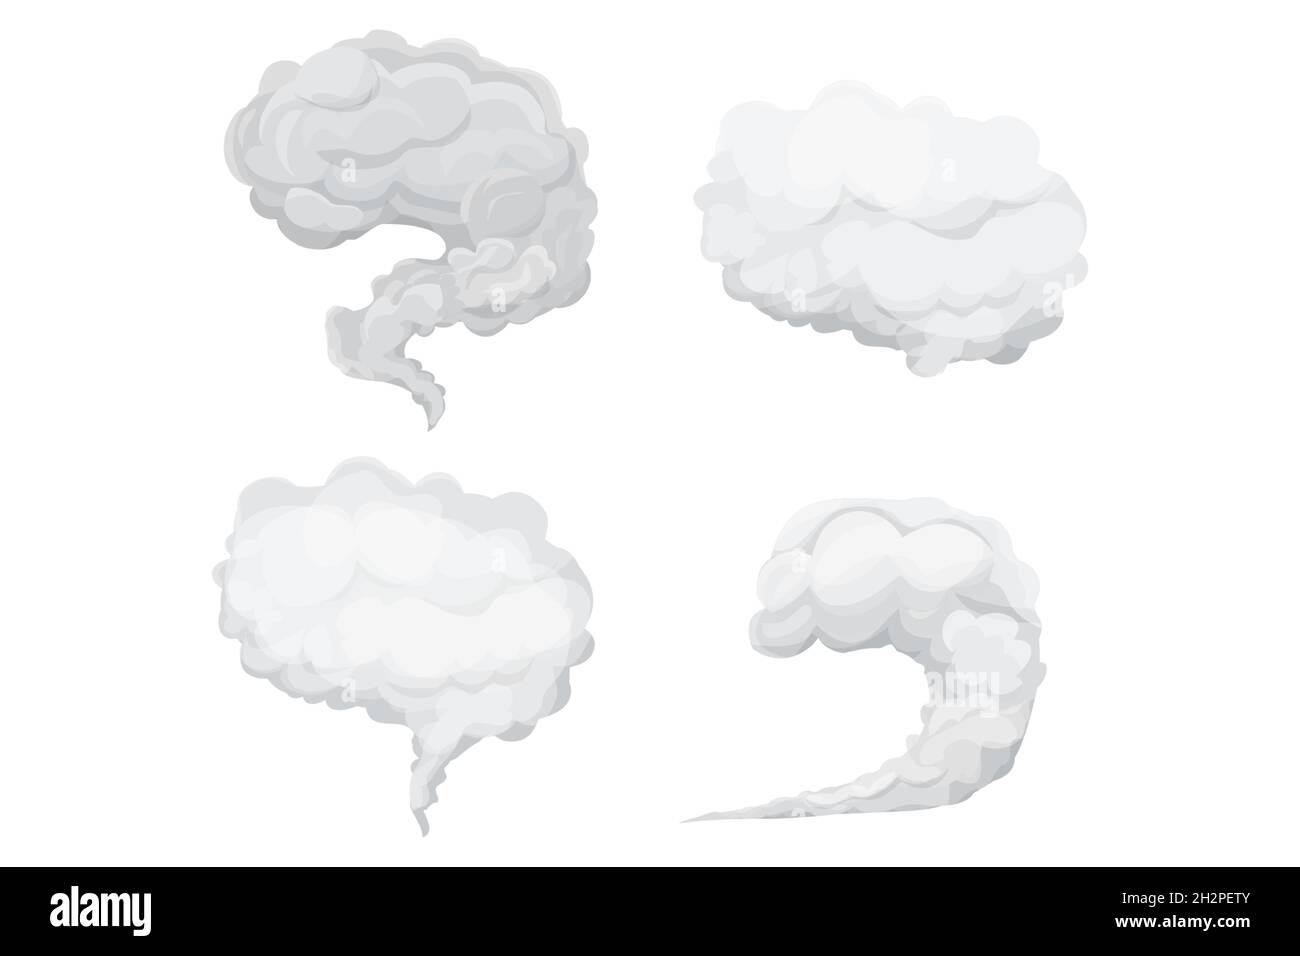 Establecer nubes grises, humo o niebla en estilo de dibujos animados aislados sobre fondo blanco. Elemento meteorológico, burbuja esponjosa. Ilustración vectorial Ilustración del Vector